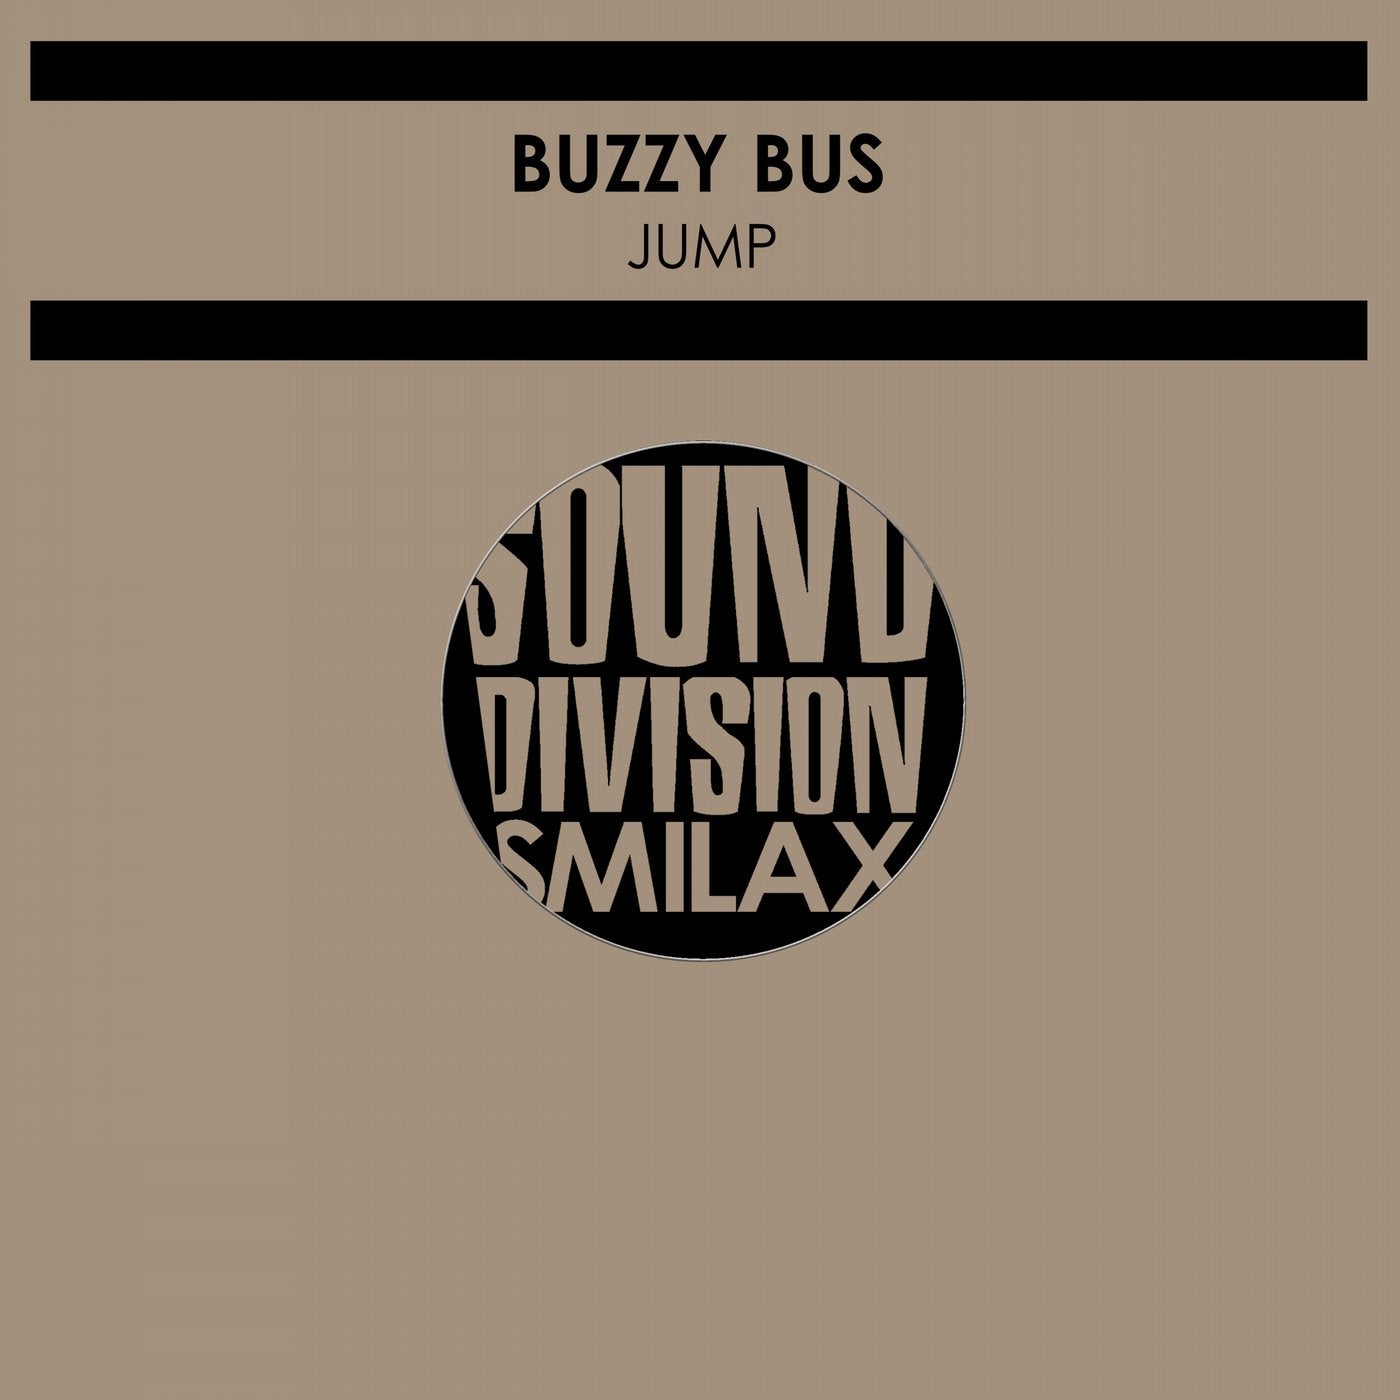 Buzzy bus sony s5000es